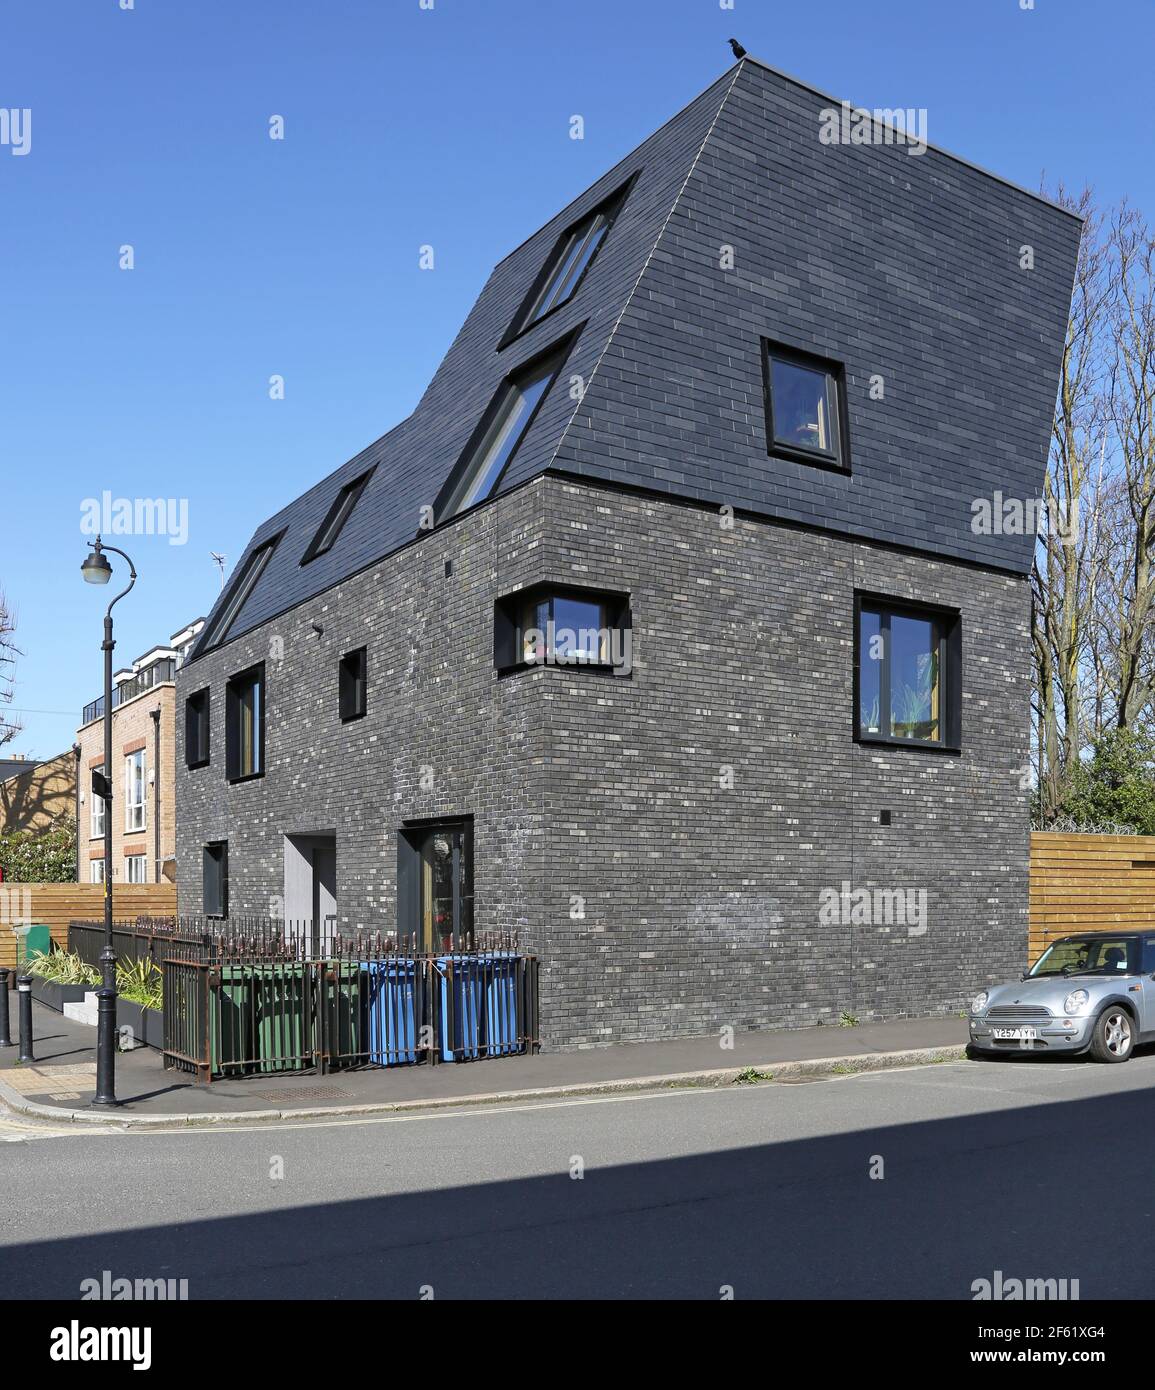 Markante neue Wohnblock an der Costa Steet, Peckham durch WAS Architektur. Mit dunklem Mauerwerk, schwarzen Fenstern und nach außen geneigtem Mansardendach. Stockfoto